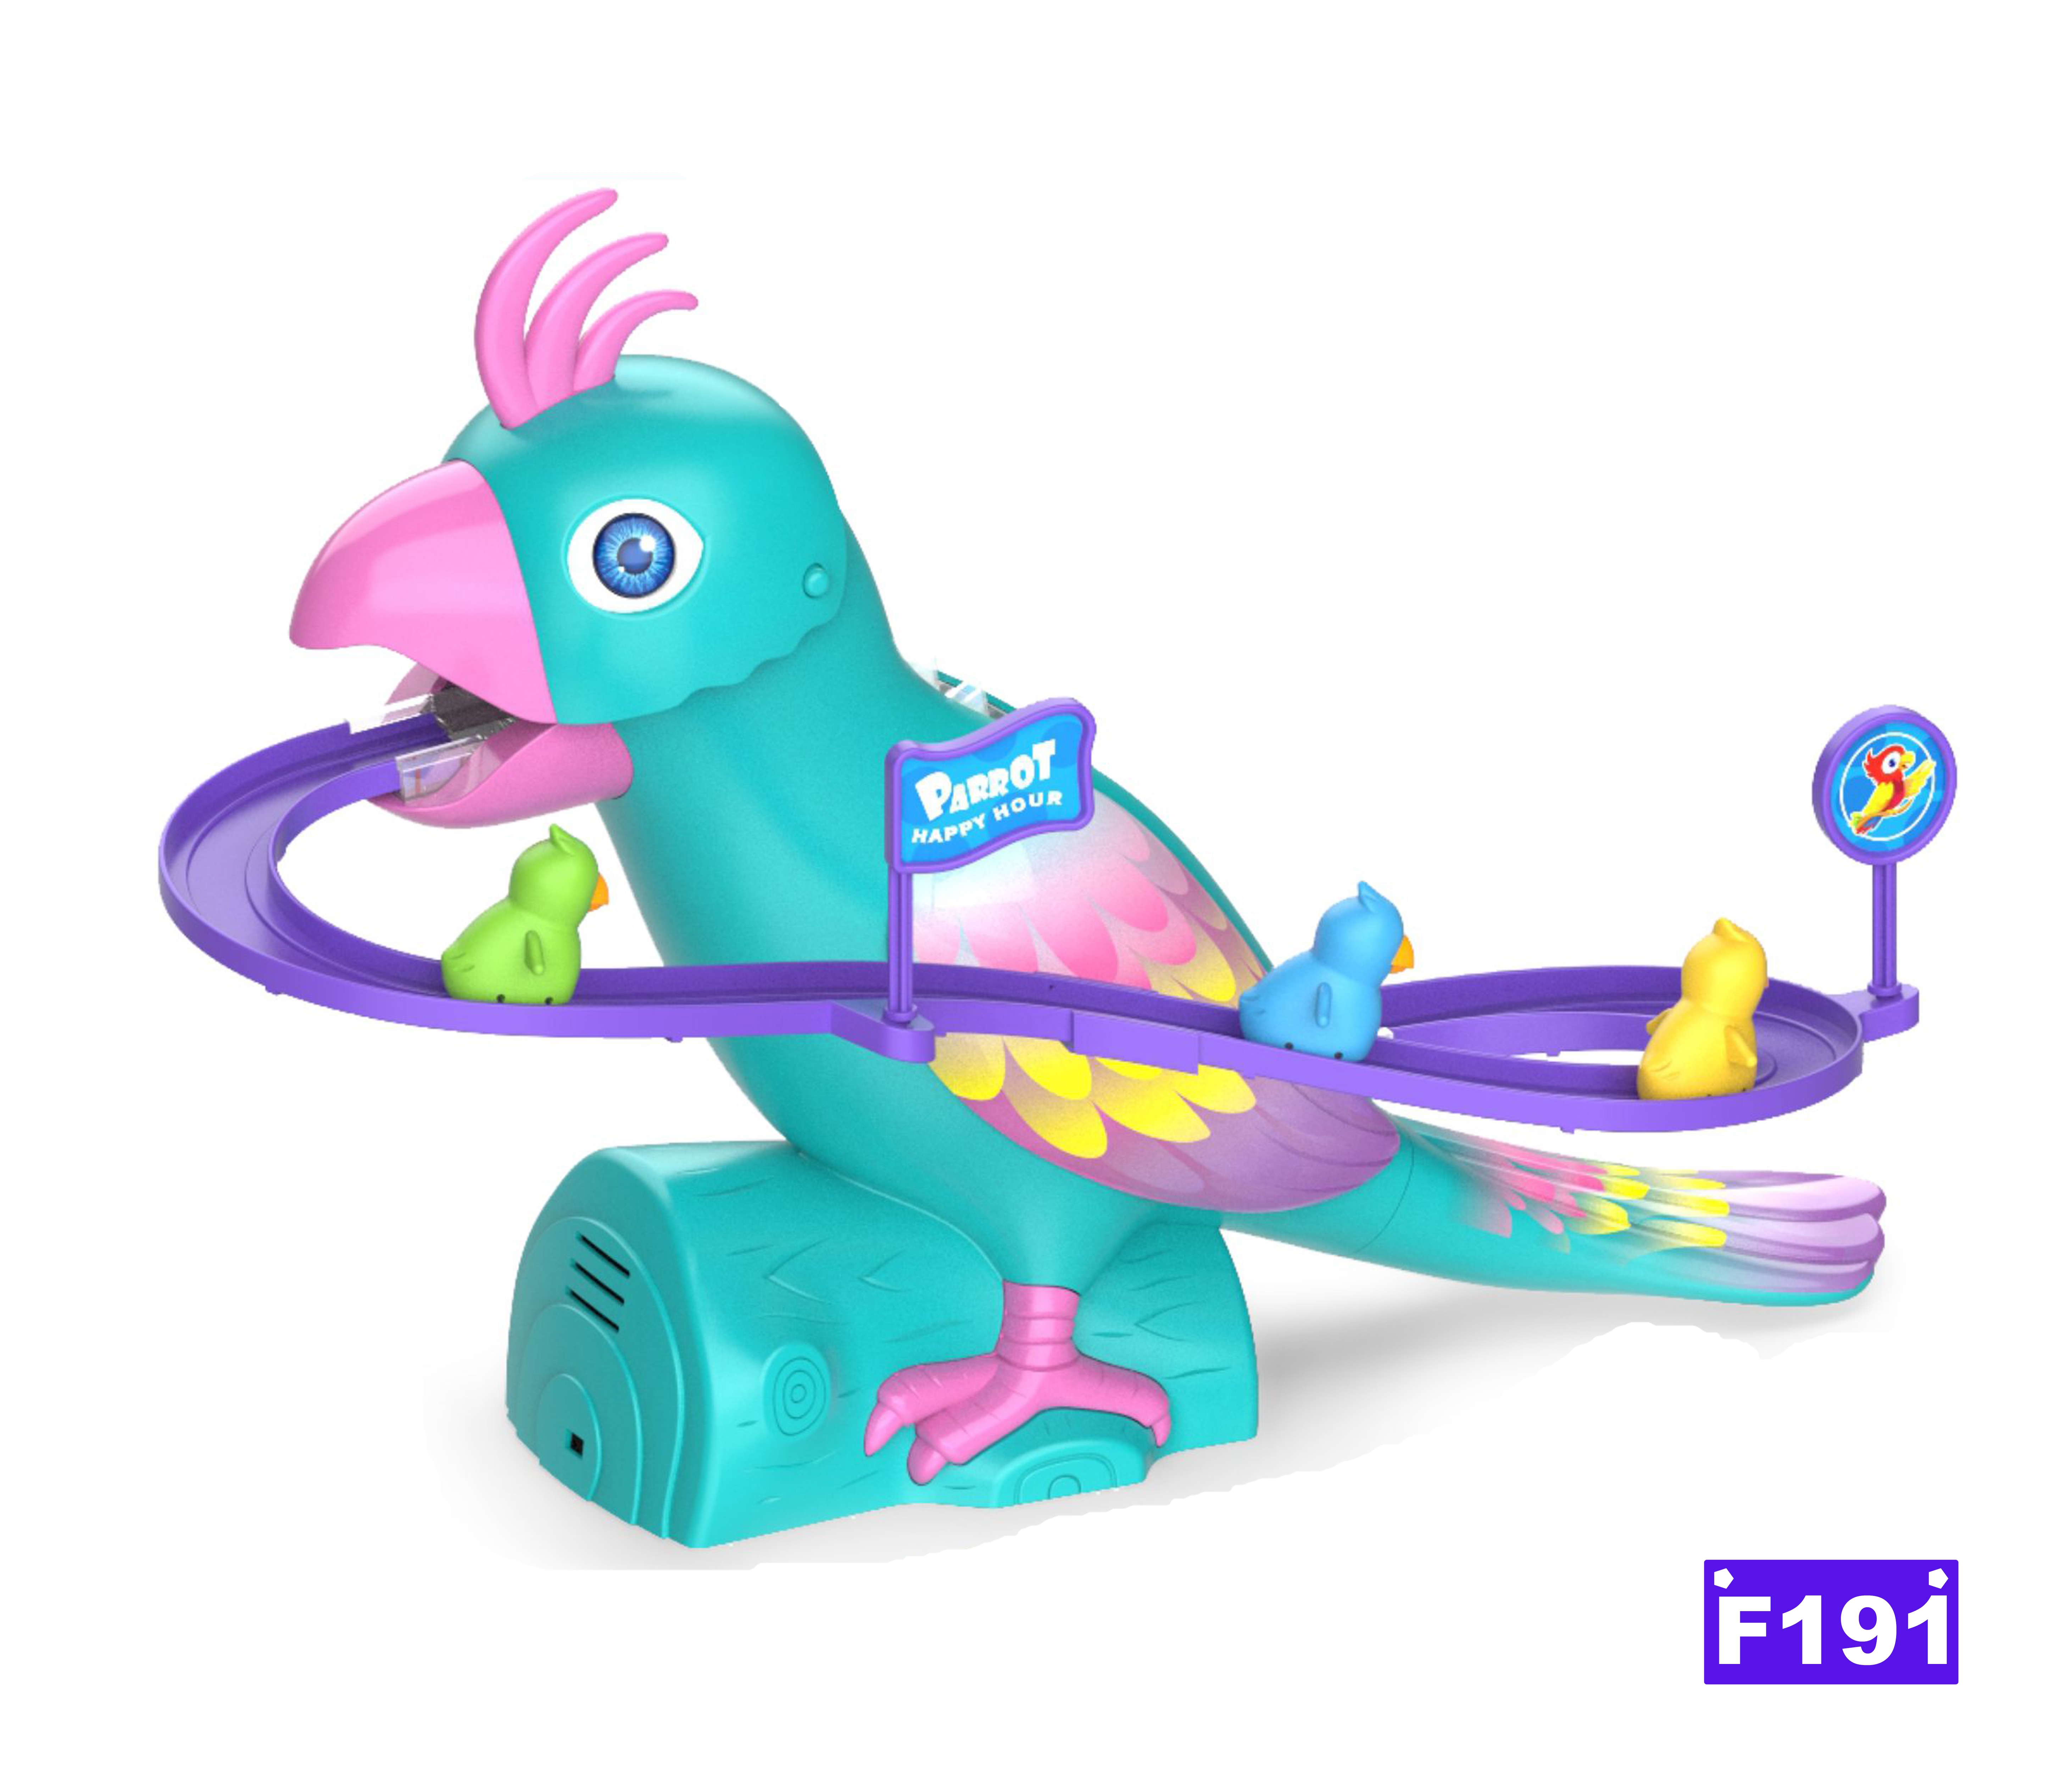 鹦鹉爬楼梯 电动滑梯玩具电动玩具 动物玩具 玩具鹦鹉 外贸玩具JUGUETE产品图